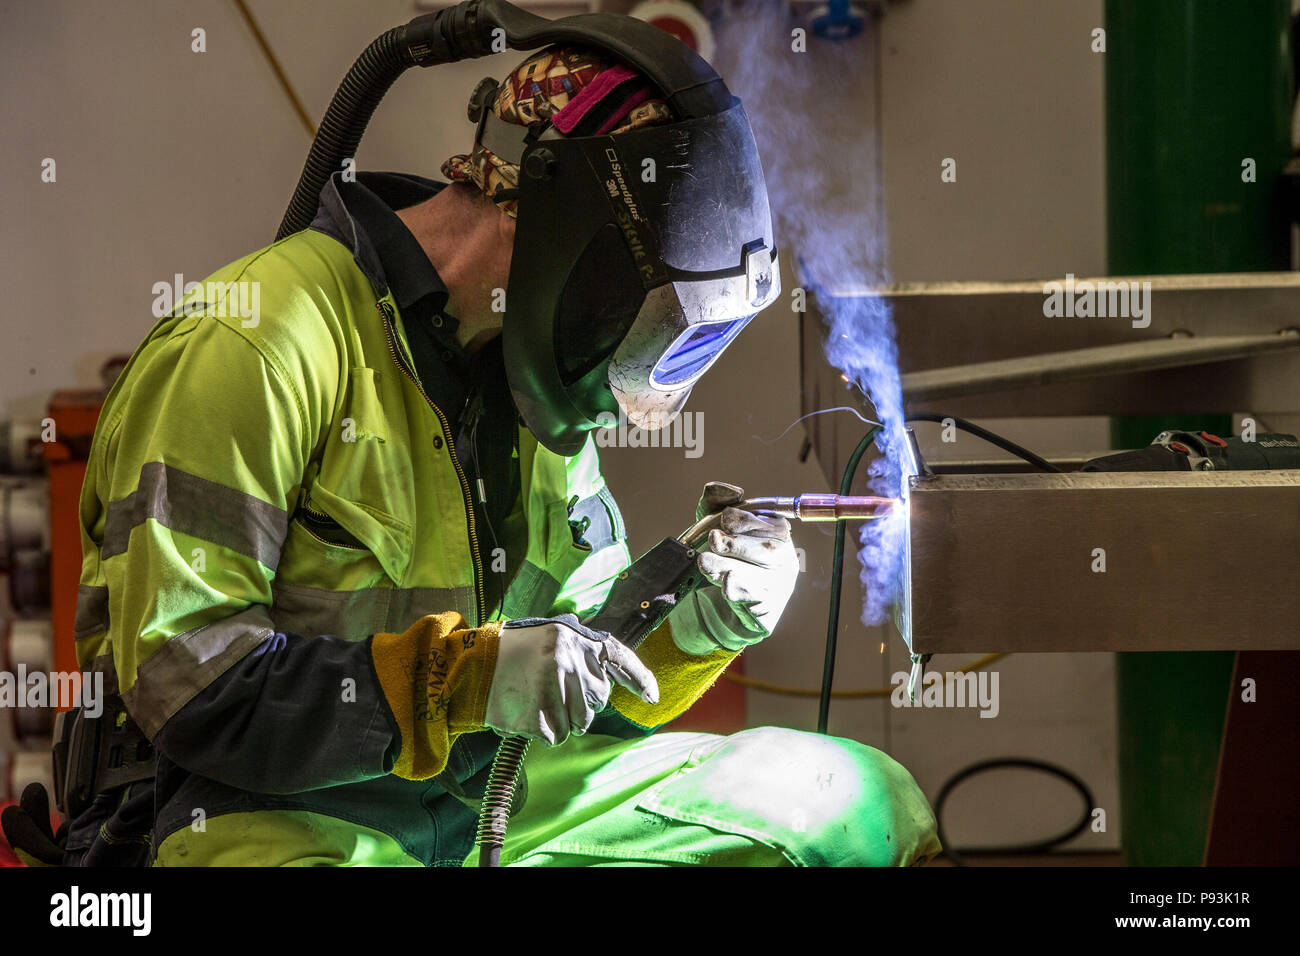 Welder wearing protective equipment welding Stock Photo